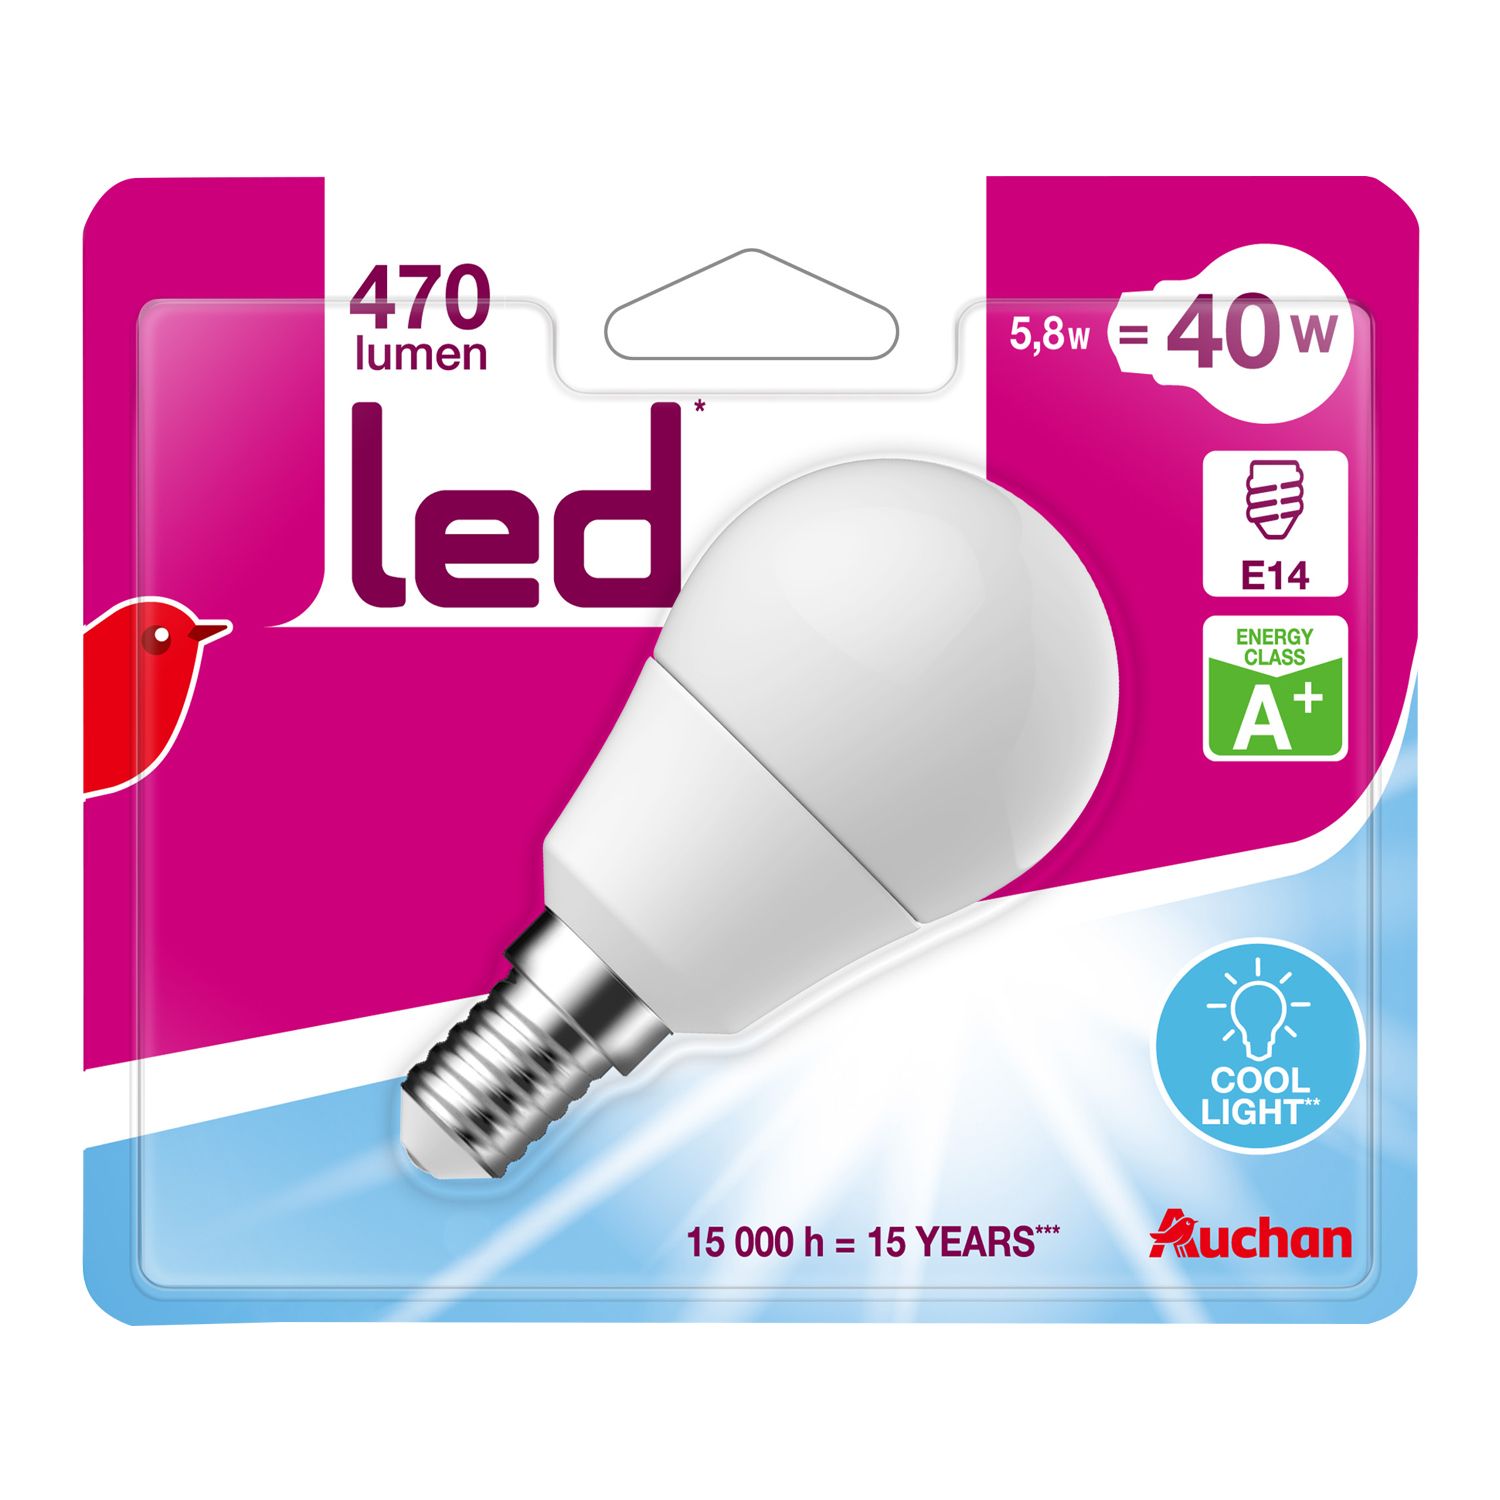 AUCHAN Auchan Ampoule led E14 mini sphéres 40w cool light 470 lumen x1 470  lumen 1 pièce pas cher 